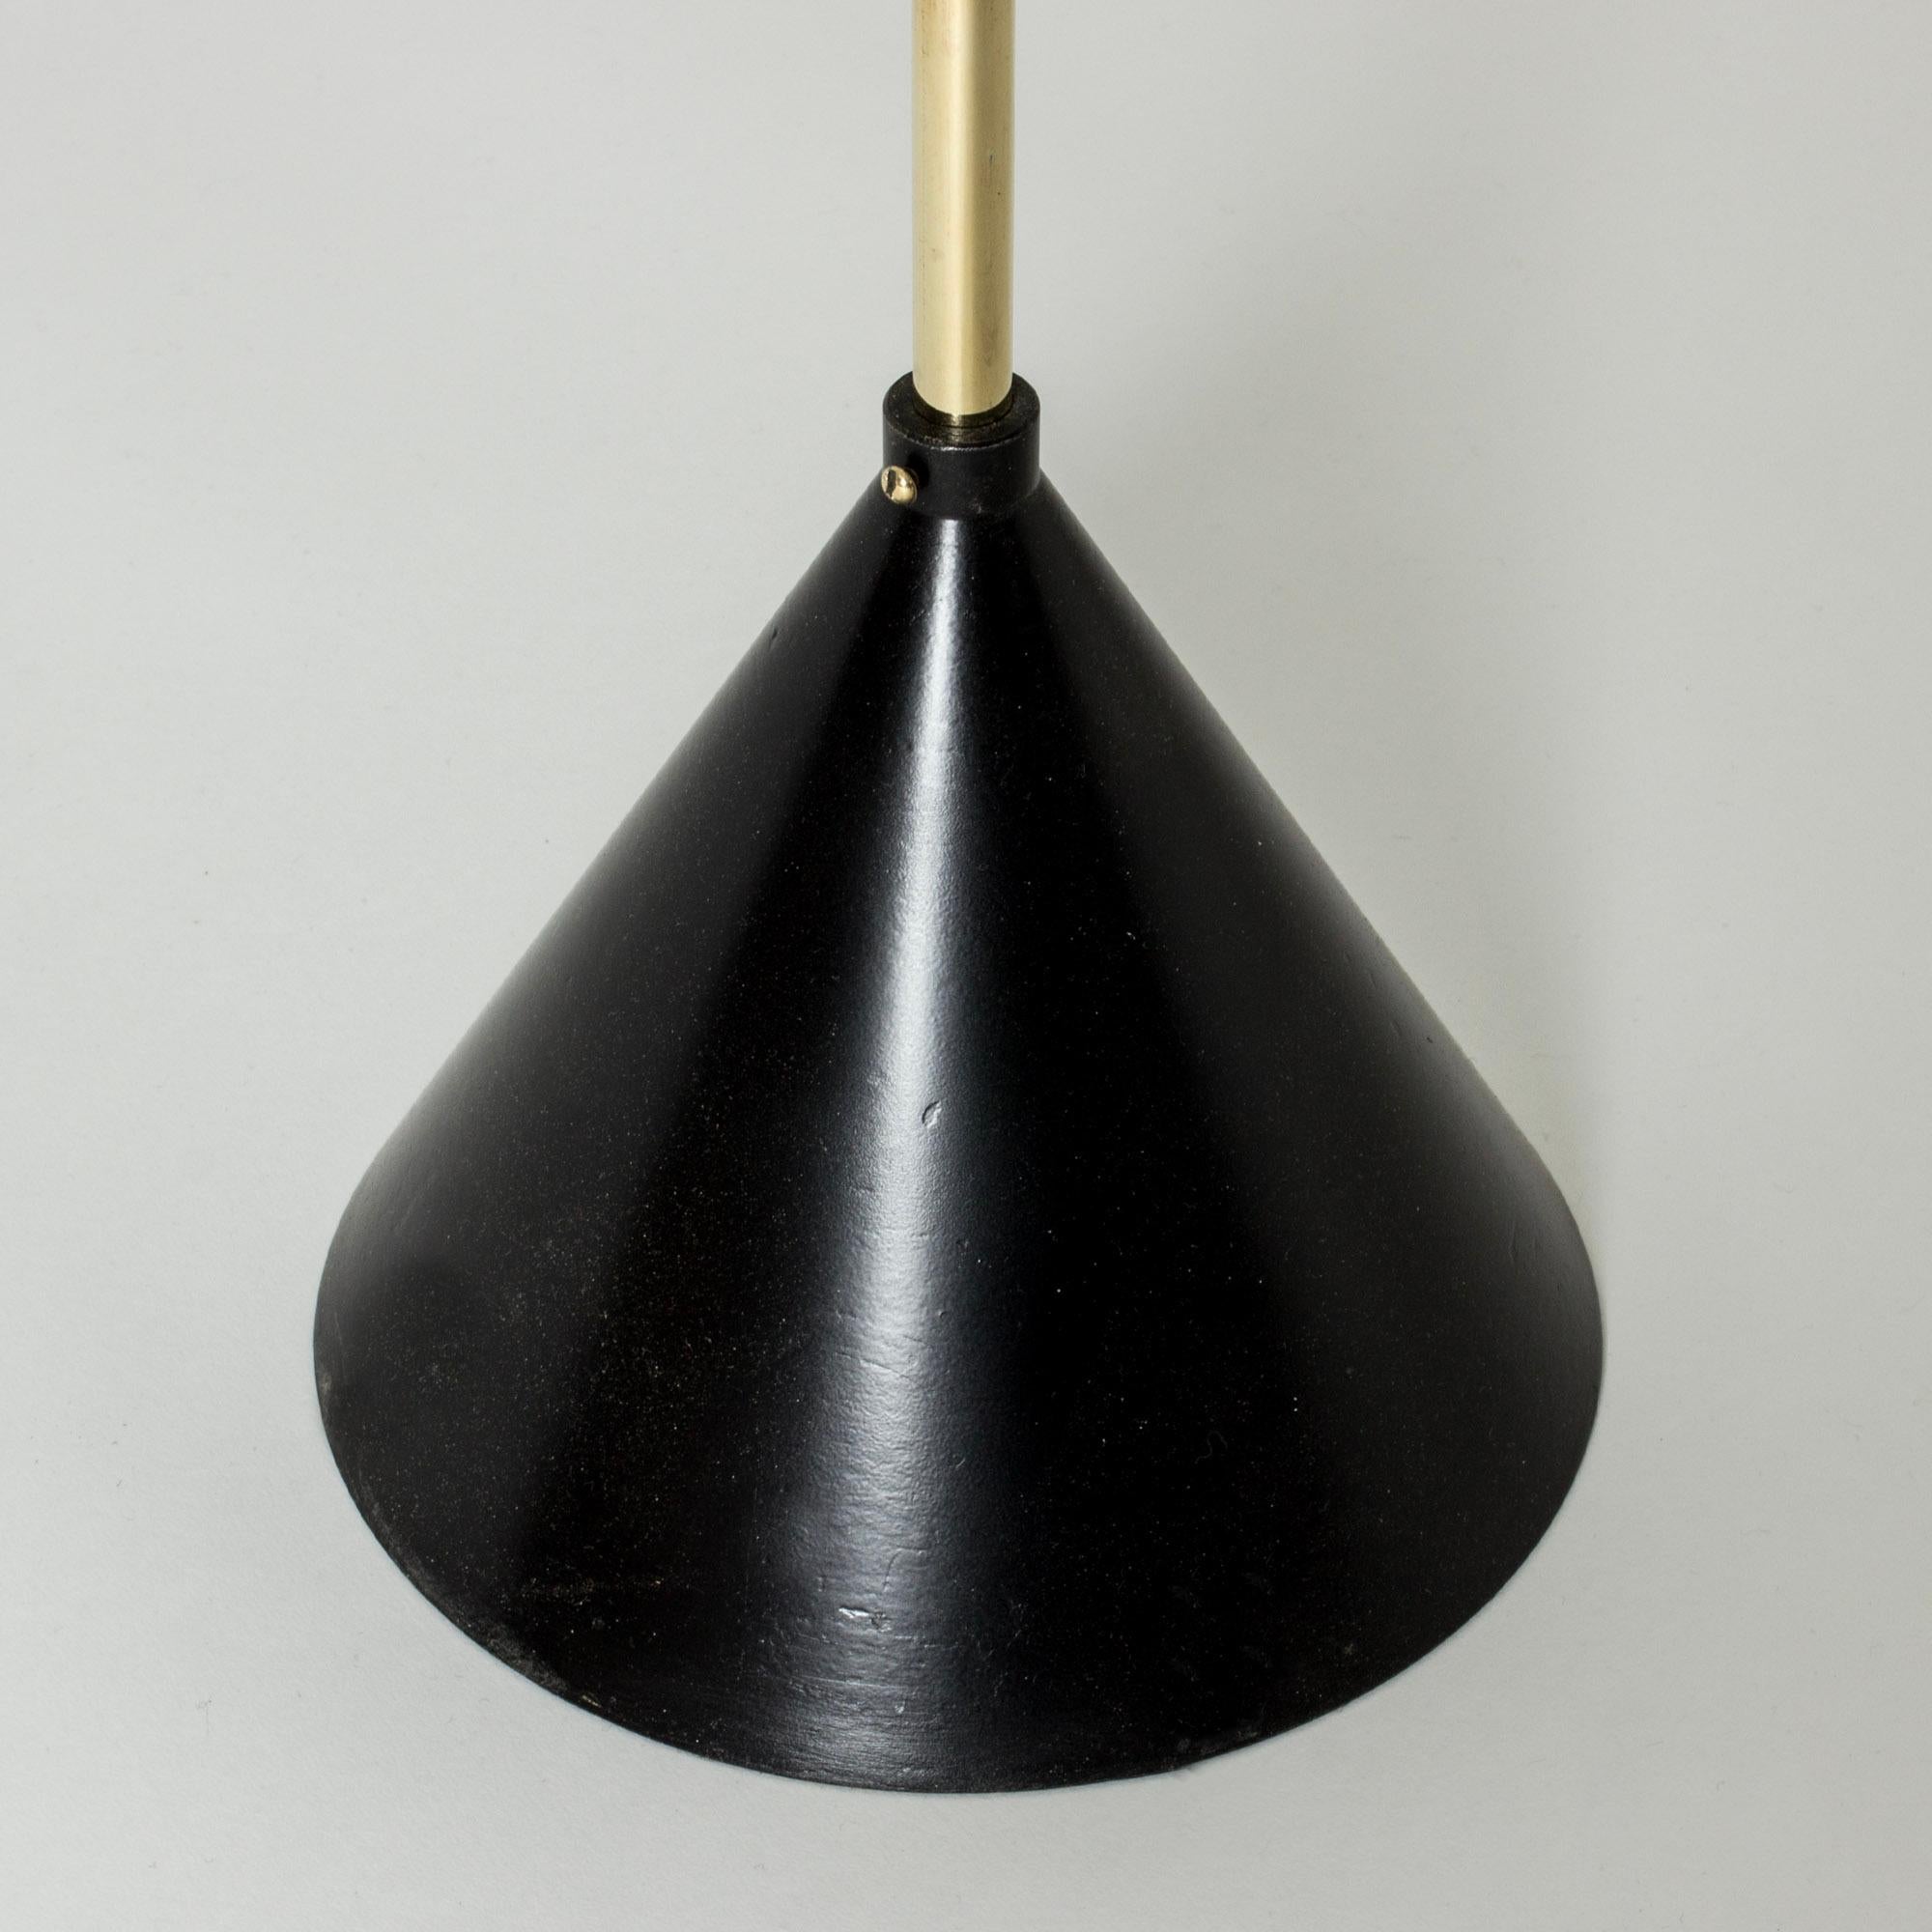 Mid-20th Century Midcentury Brass Floor Lamp by Tapio Wirkkala for Idman Oy